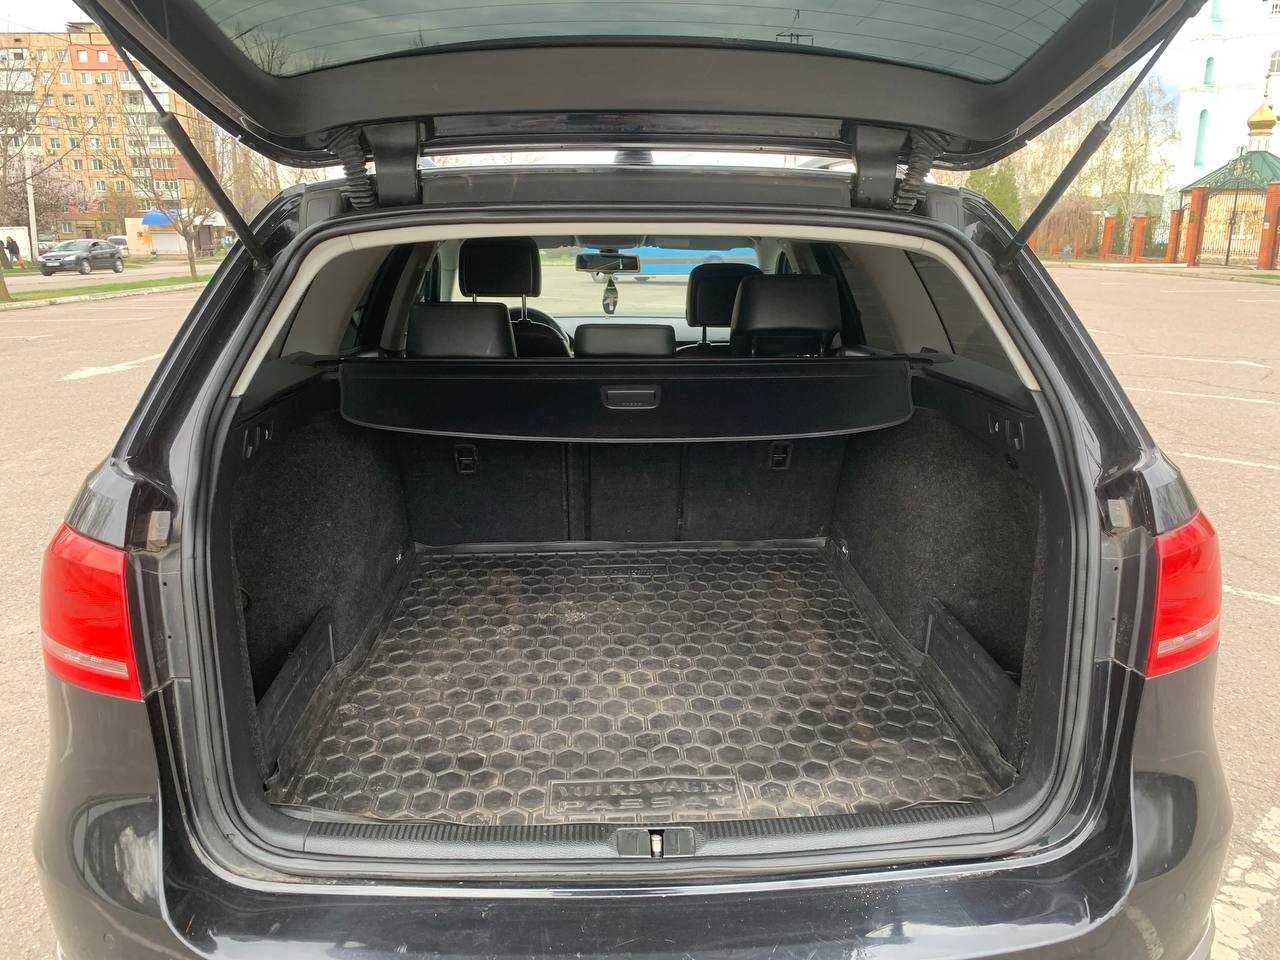 Volkswagen Passat, 2,0 4х4дизель, 2011р, обмін (перший внесок від 20%)